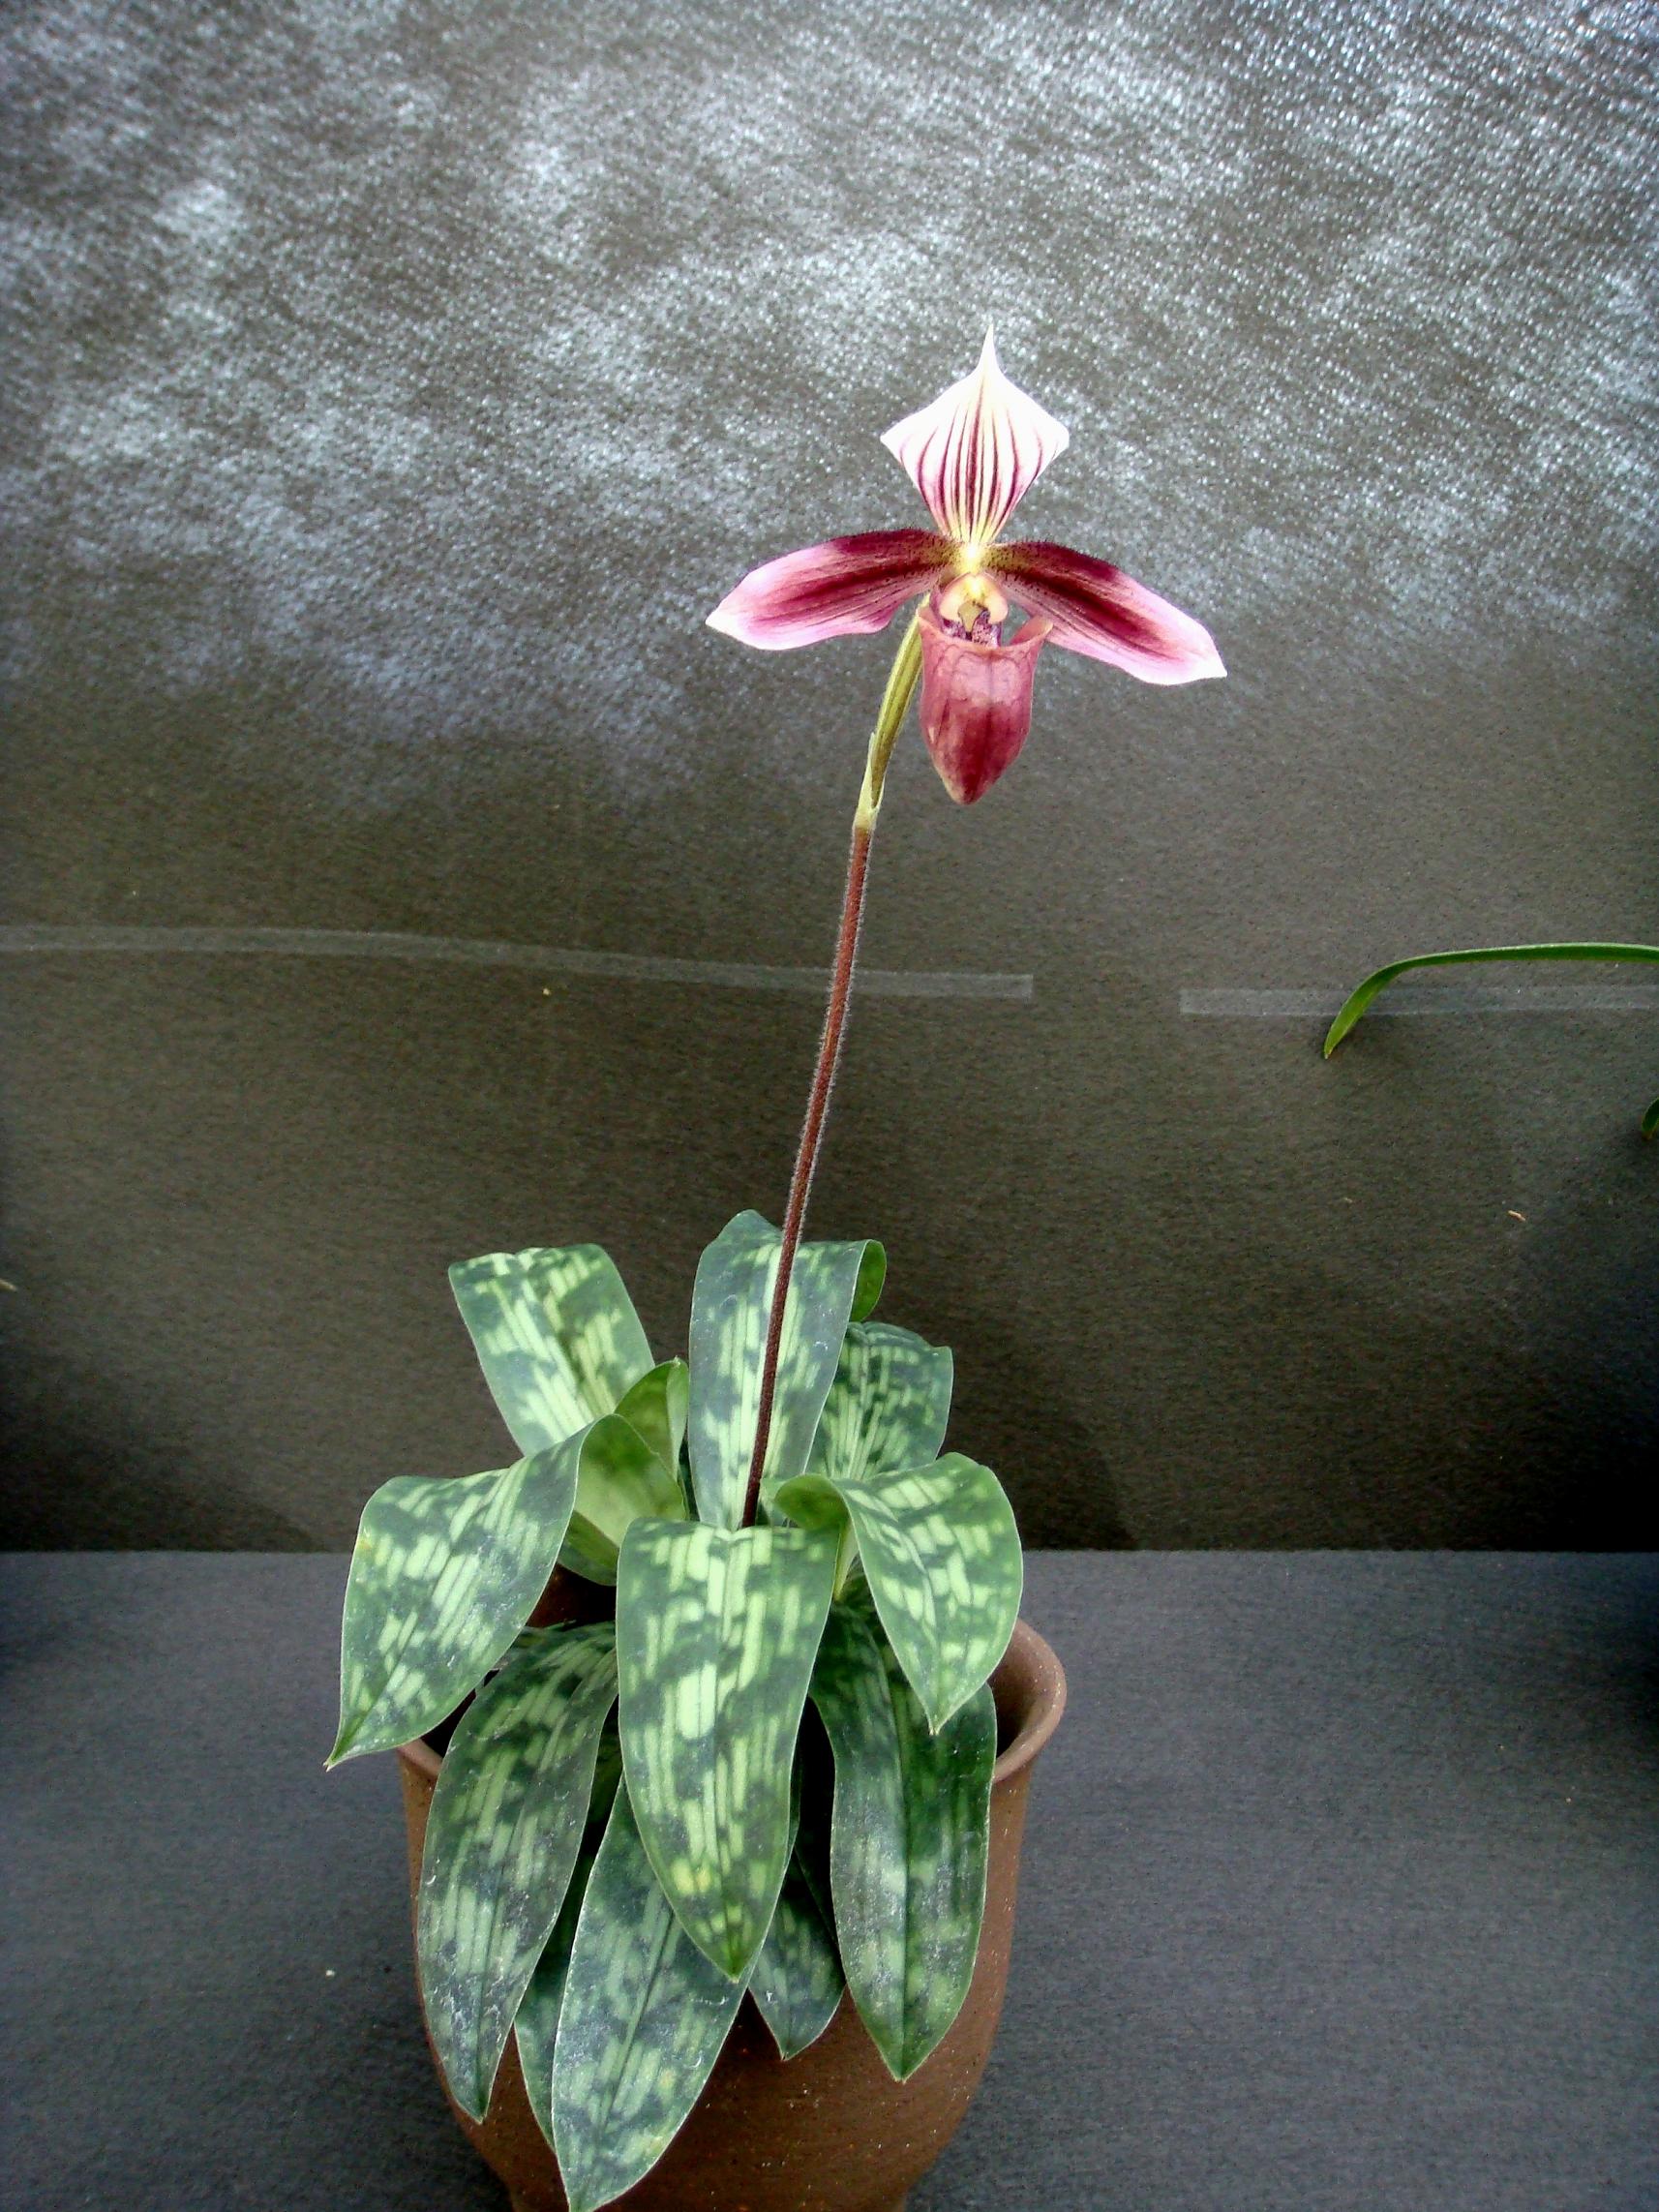 http://orchids.la.coocan.jp/Paphiopedilum/Paphiopedilum%20purpuratum/DSC02685.JPG